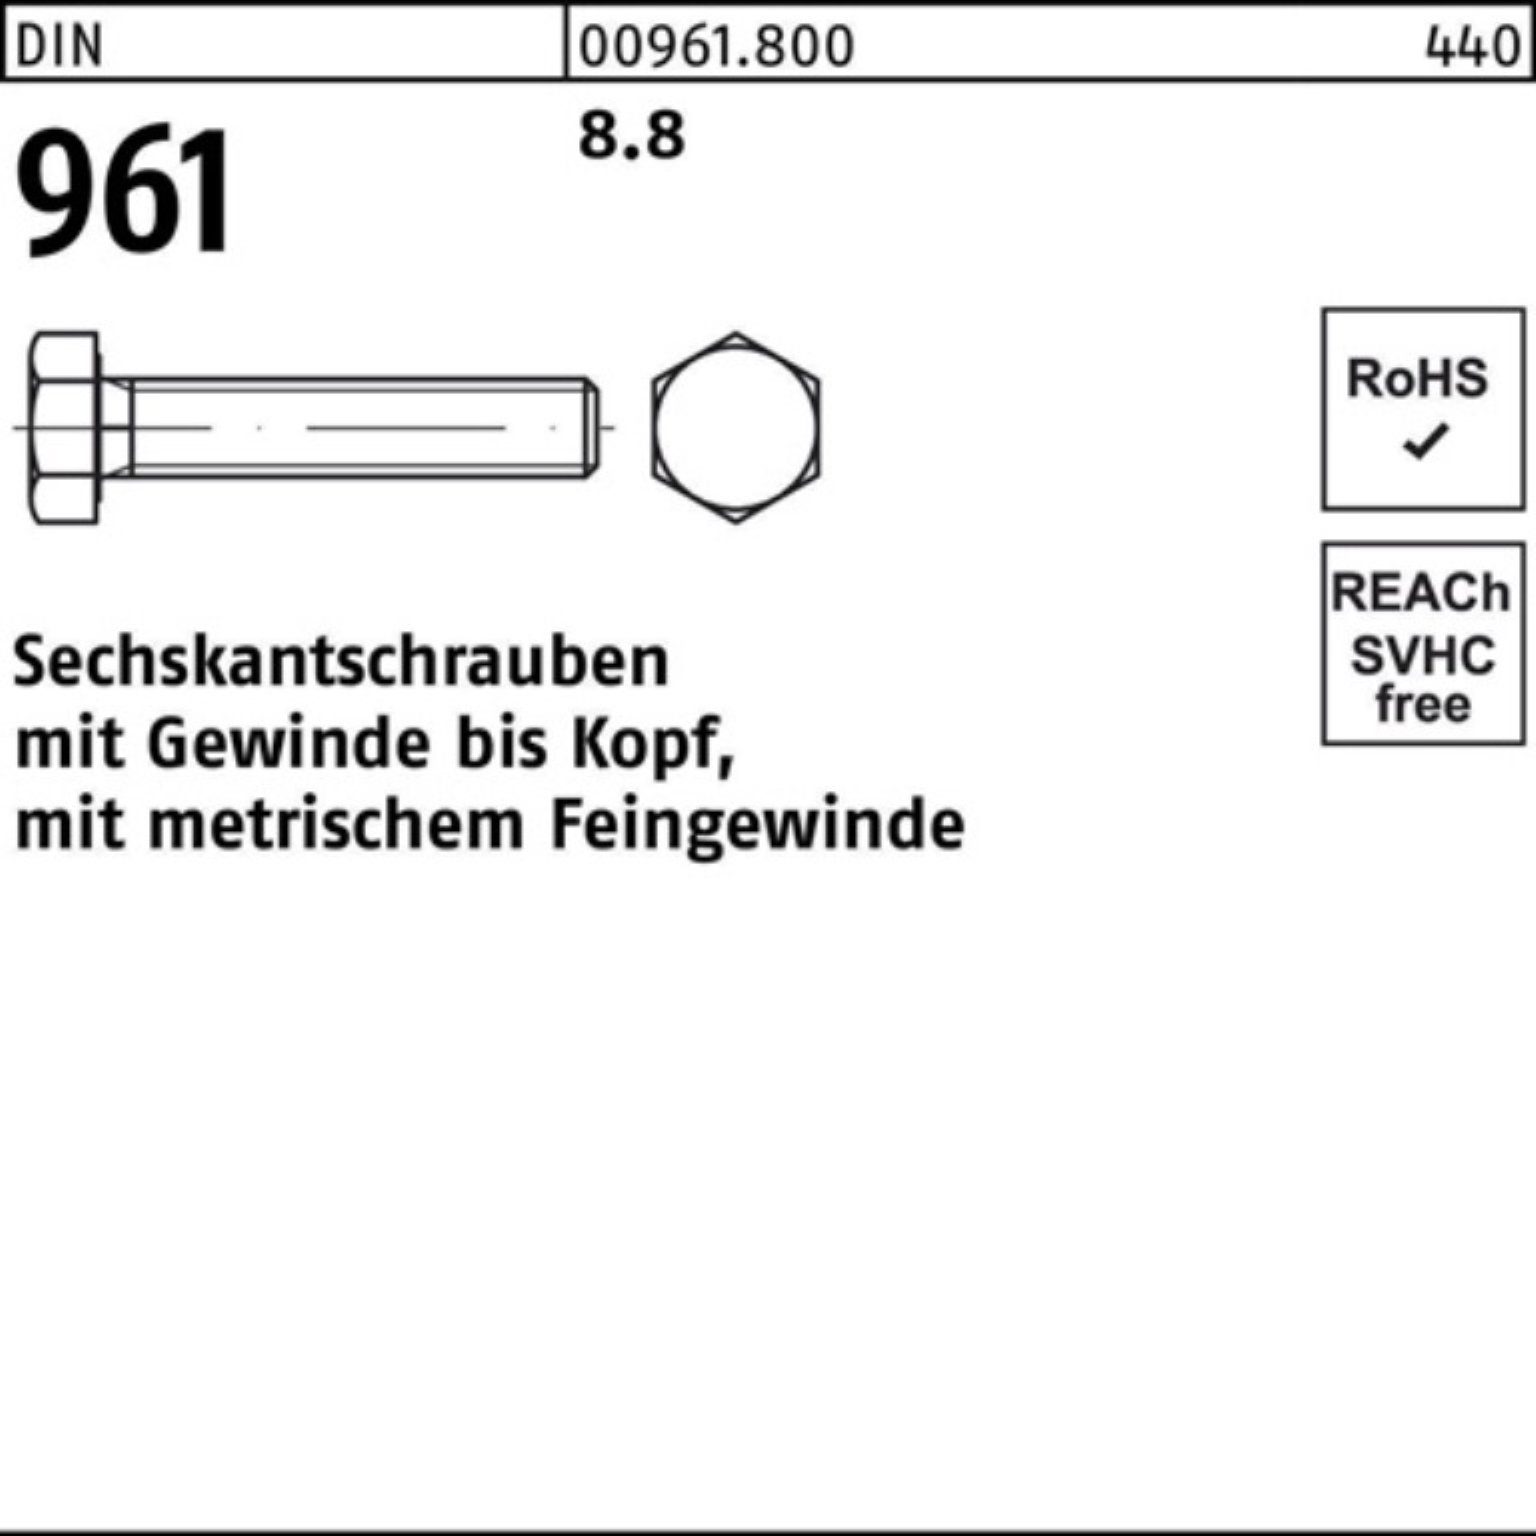 Sechskantschraube 961 50 8.8 M12x1,5x110 Sechskantschraube DIN Stück VG 100er Reyher Pack DIN